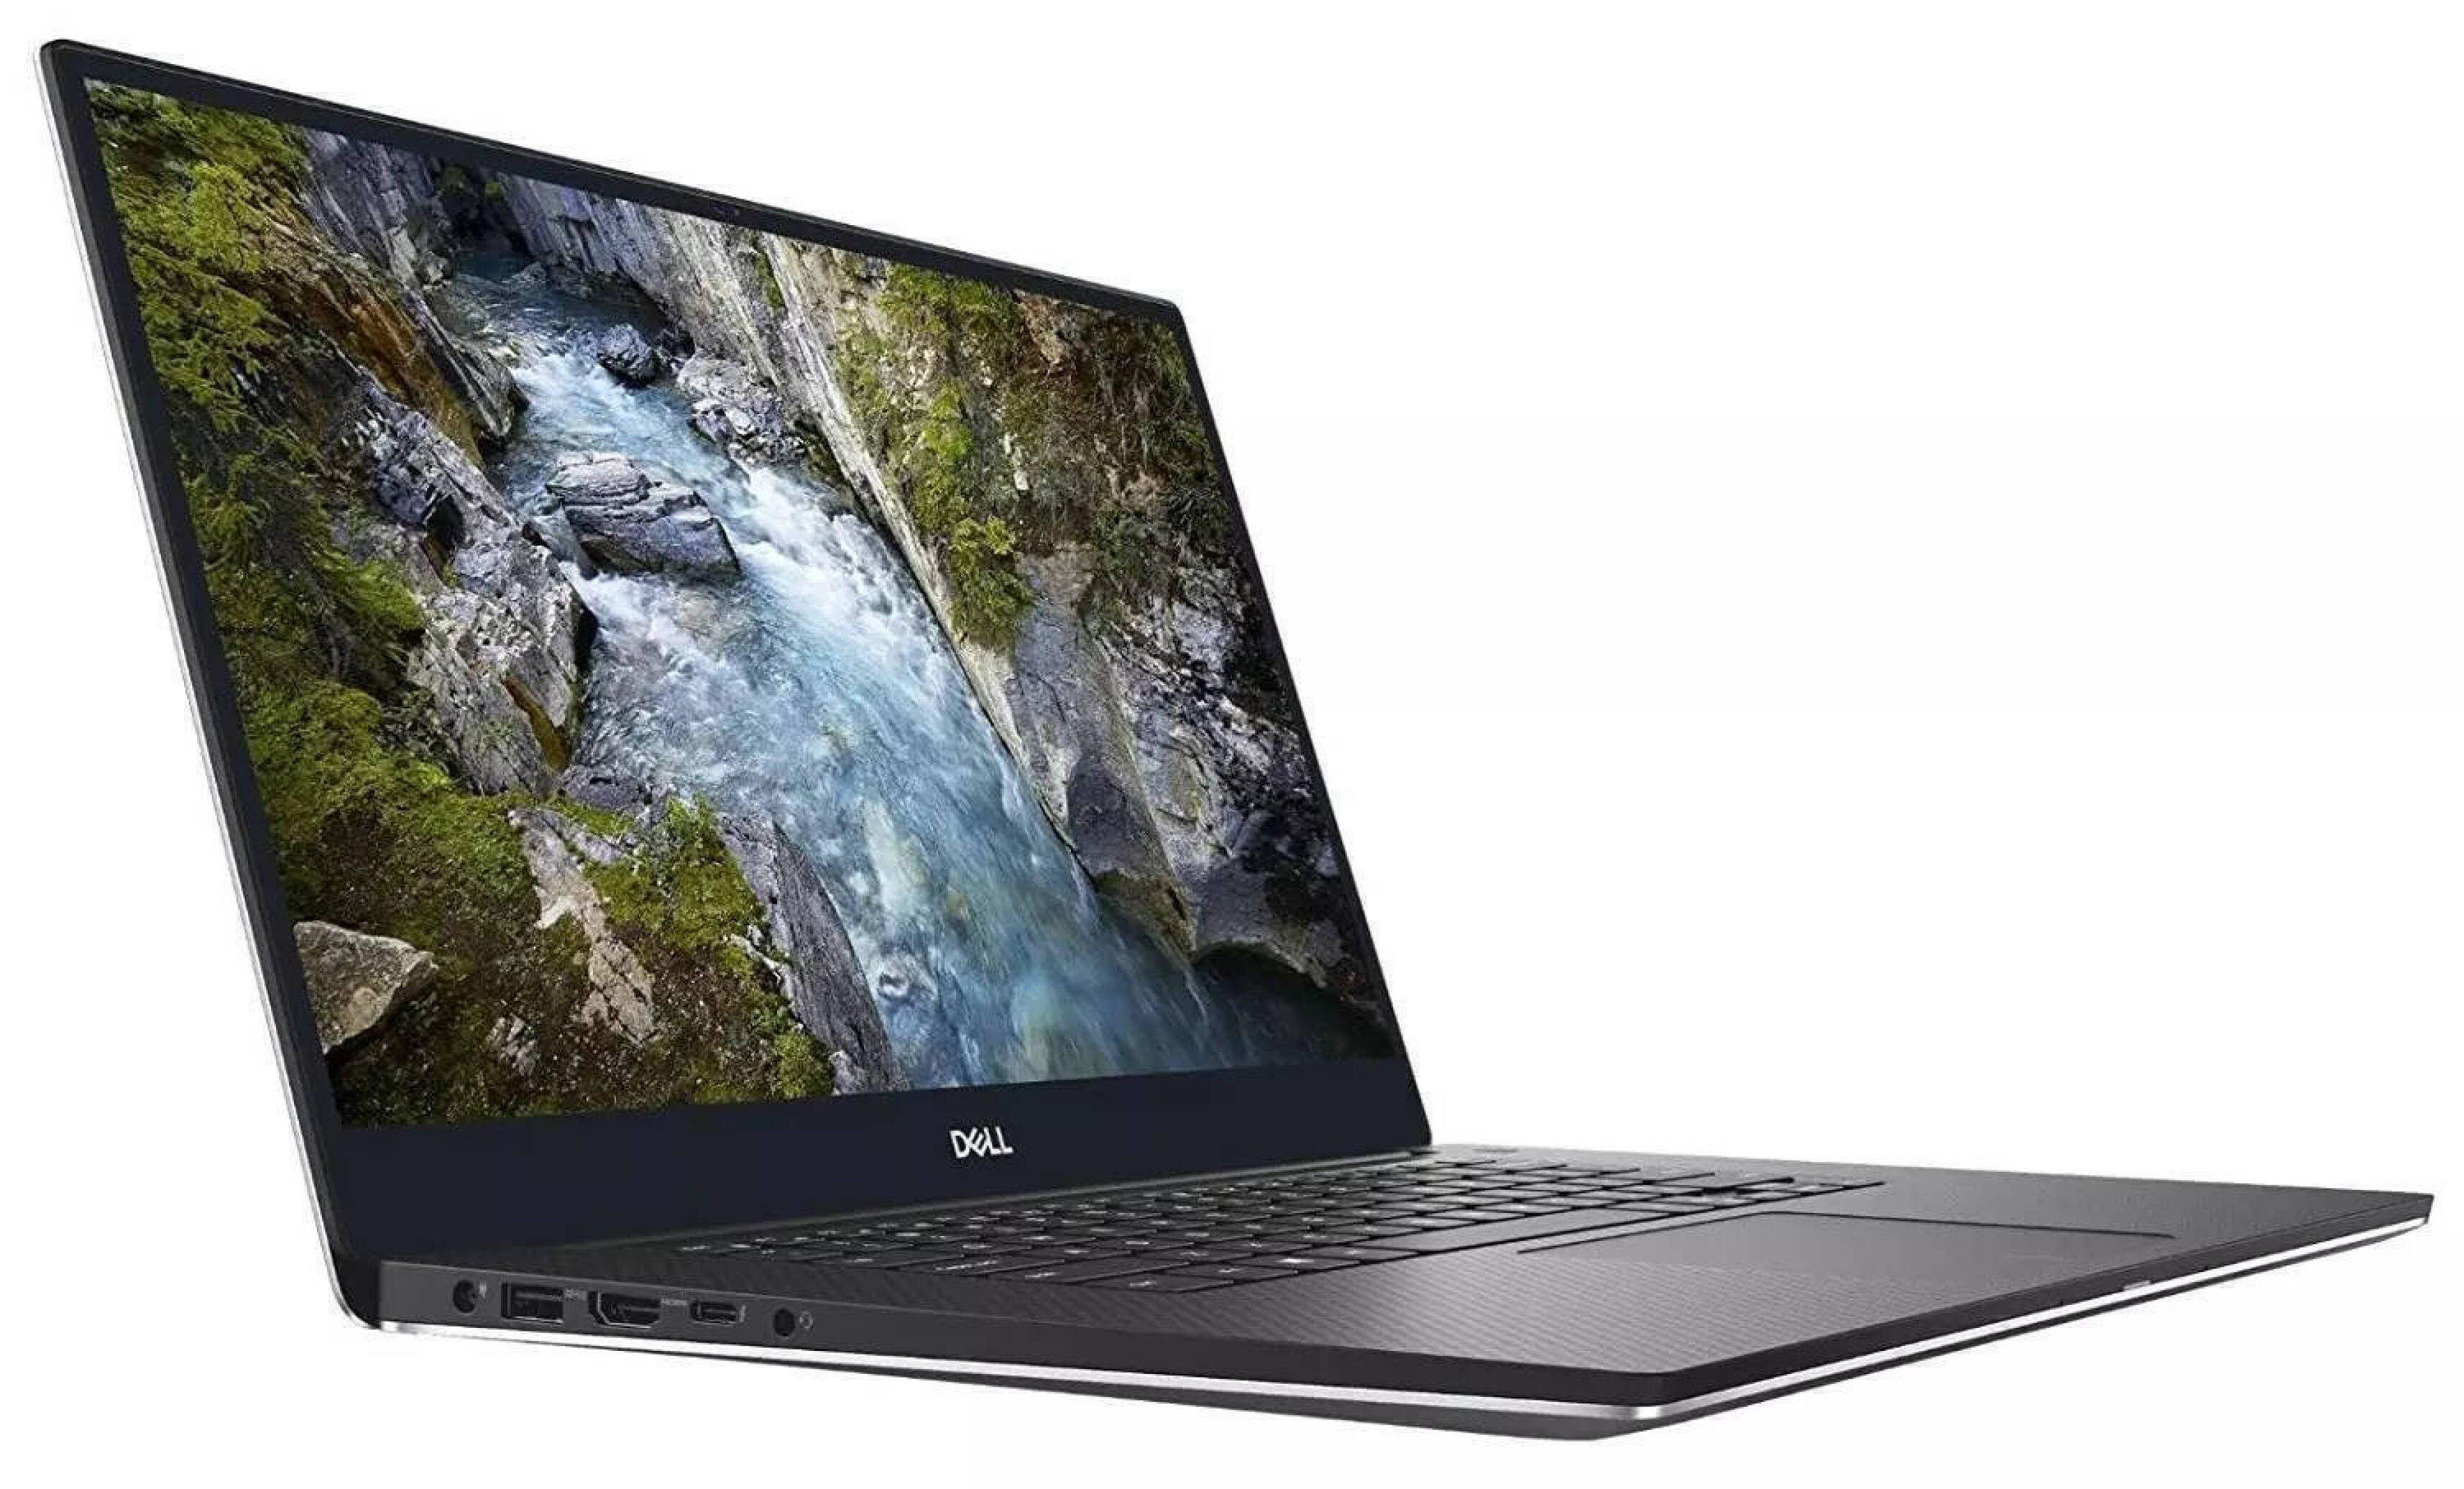  خرید مشخصات و قیمت لپ تاپ Dell Precision 5540 | لاکچری لپ تاپ 